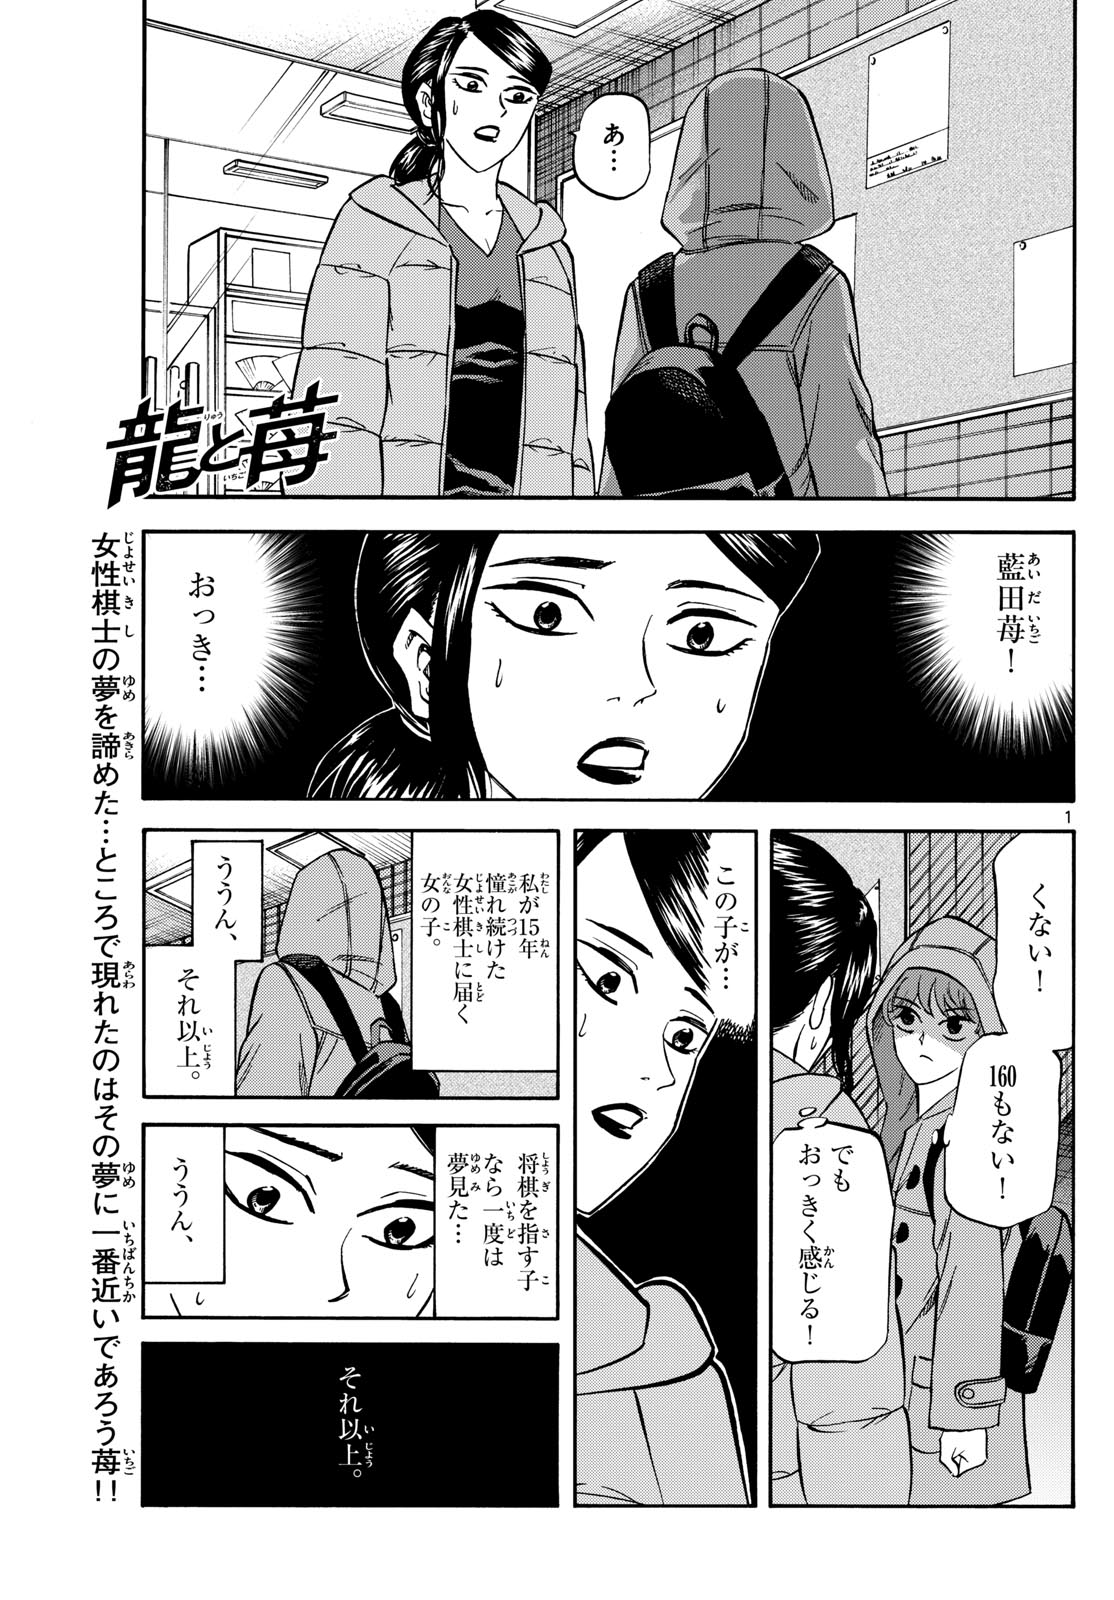 Tatsu to Ichigo - Chapter 173 - Page 1